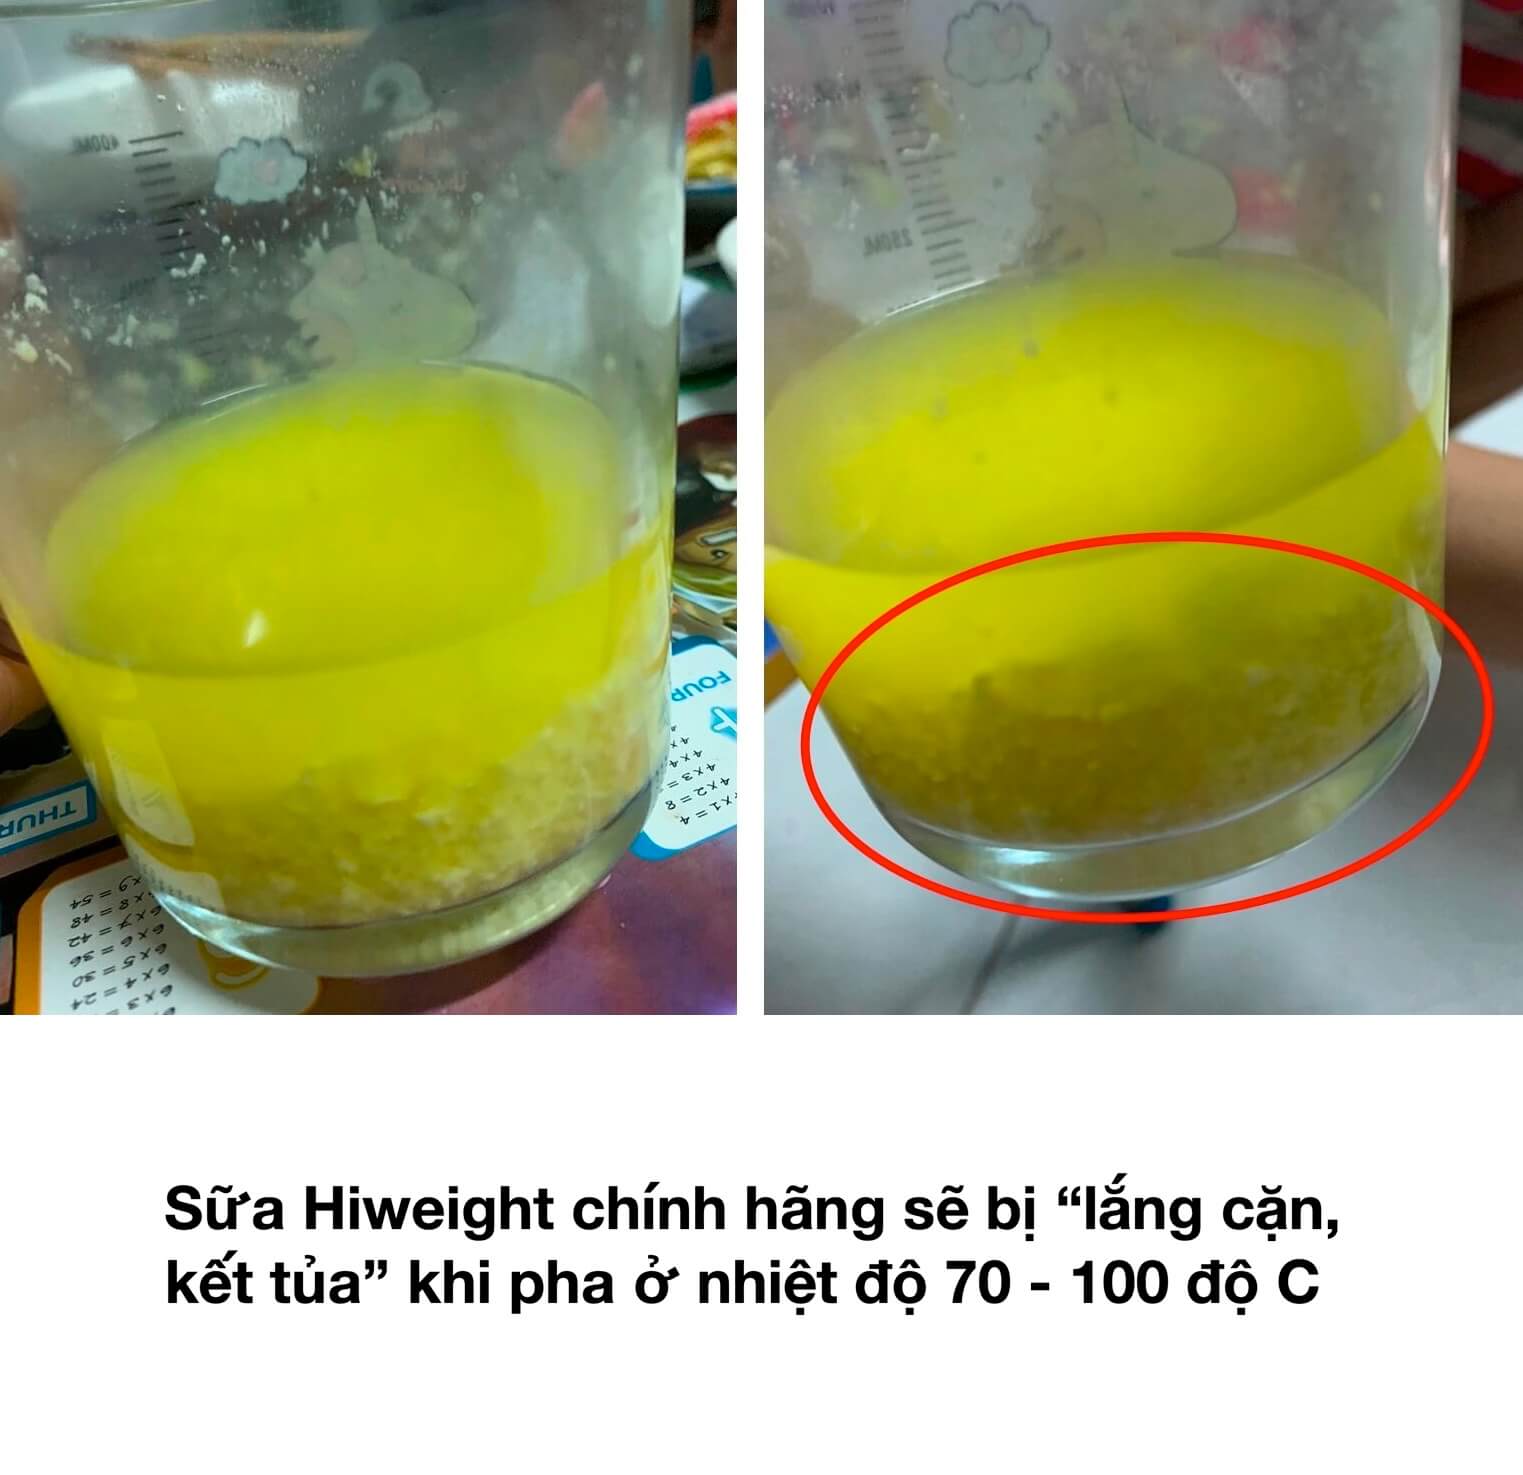 Cách phân biệt sữa Hiweight thật giả hình 18